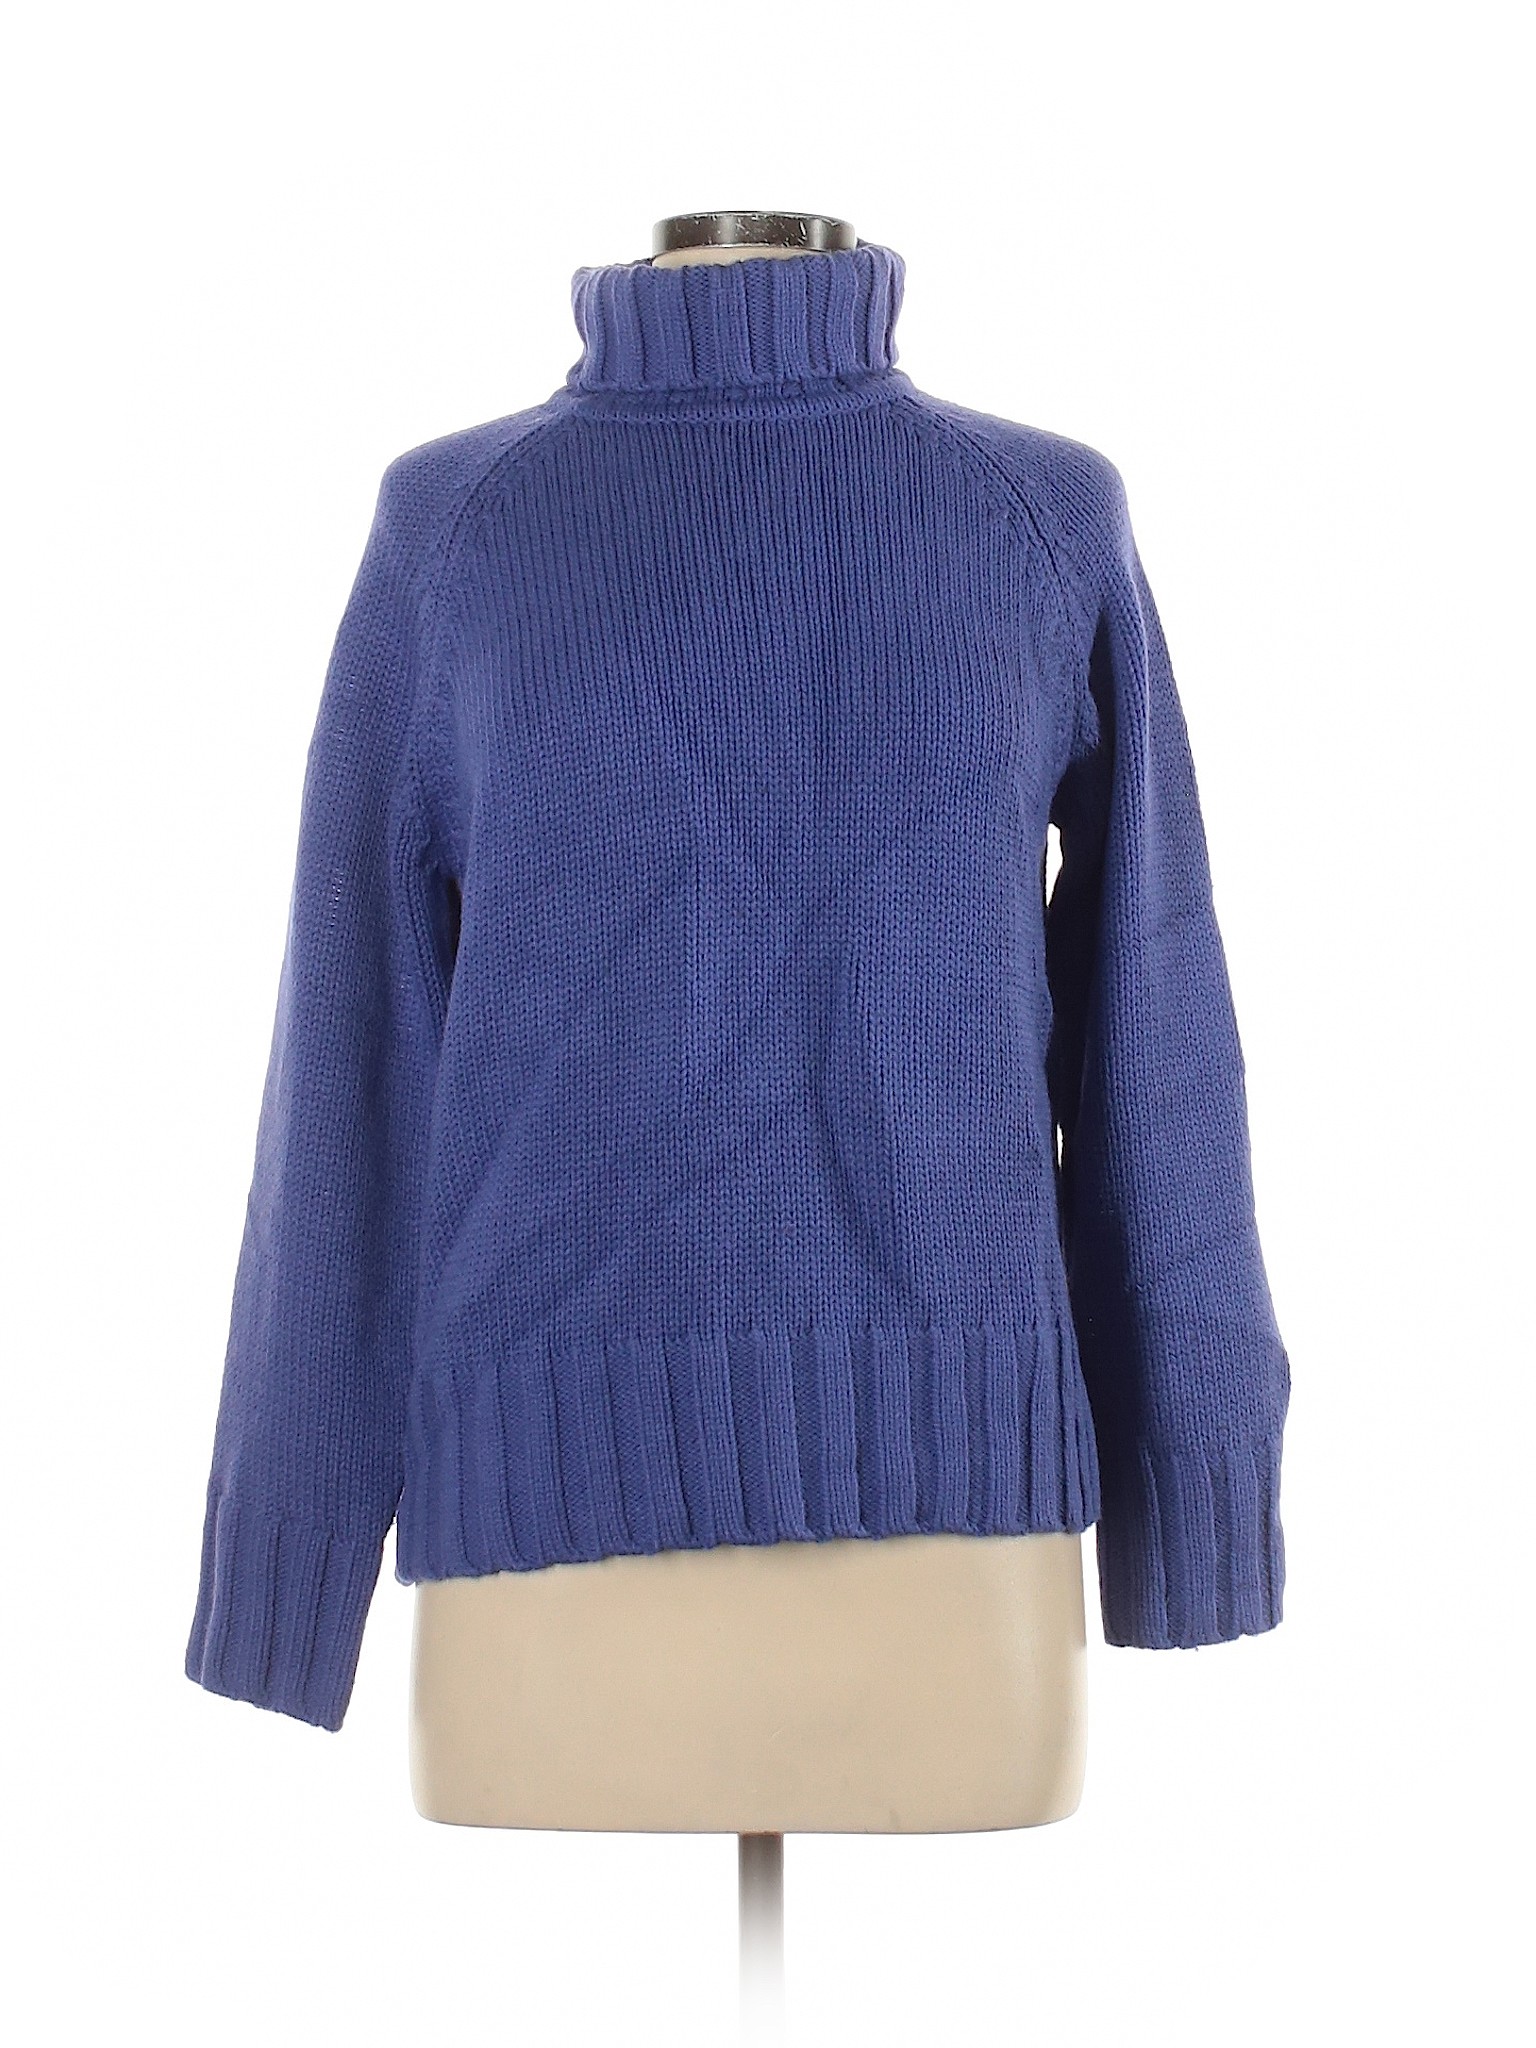 Chelsea Studio Women Purple Turtleneck Sweater M | eBay